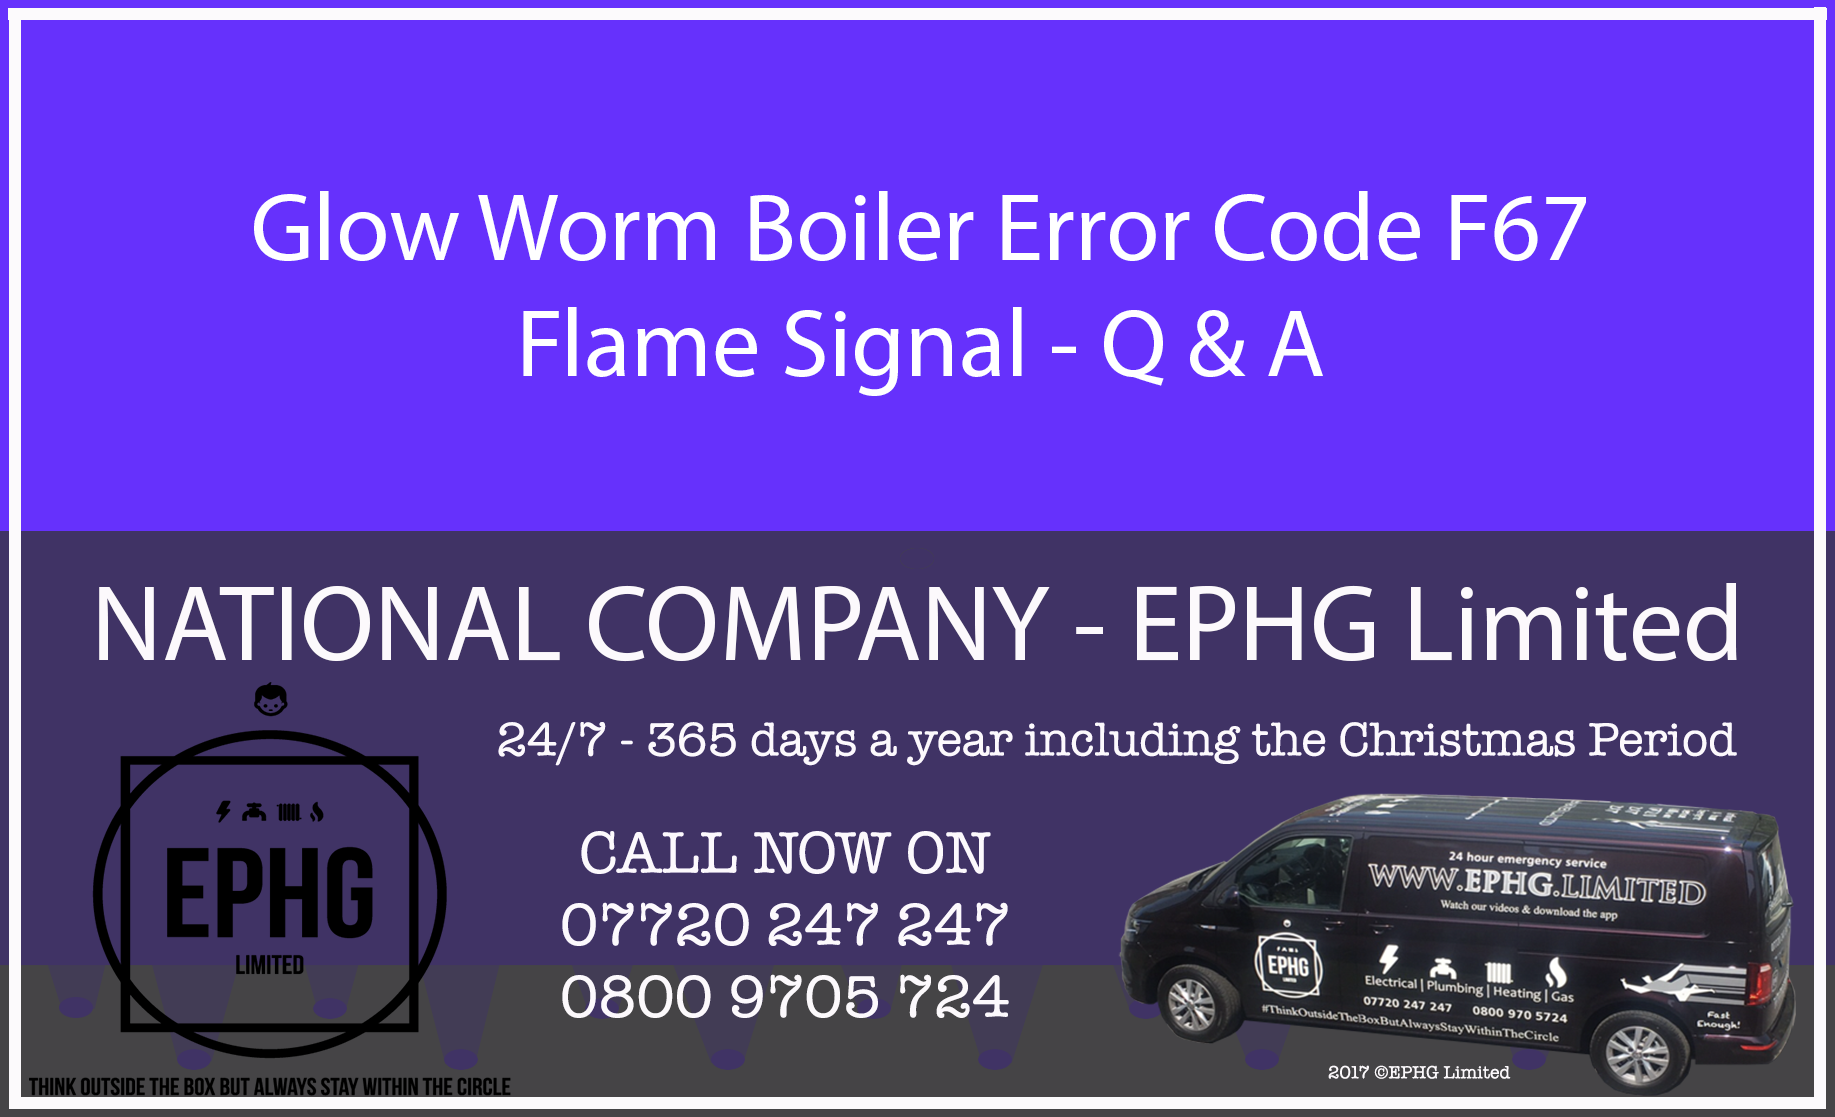 Glow-Worm boiler error code F.67